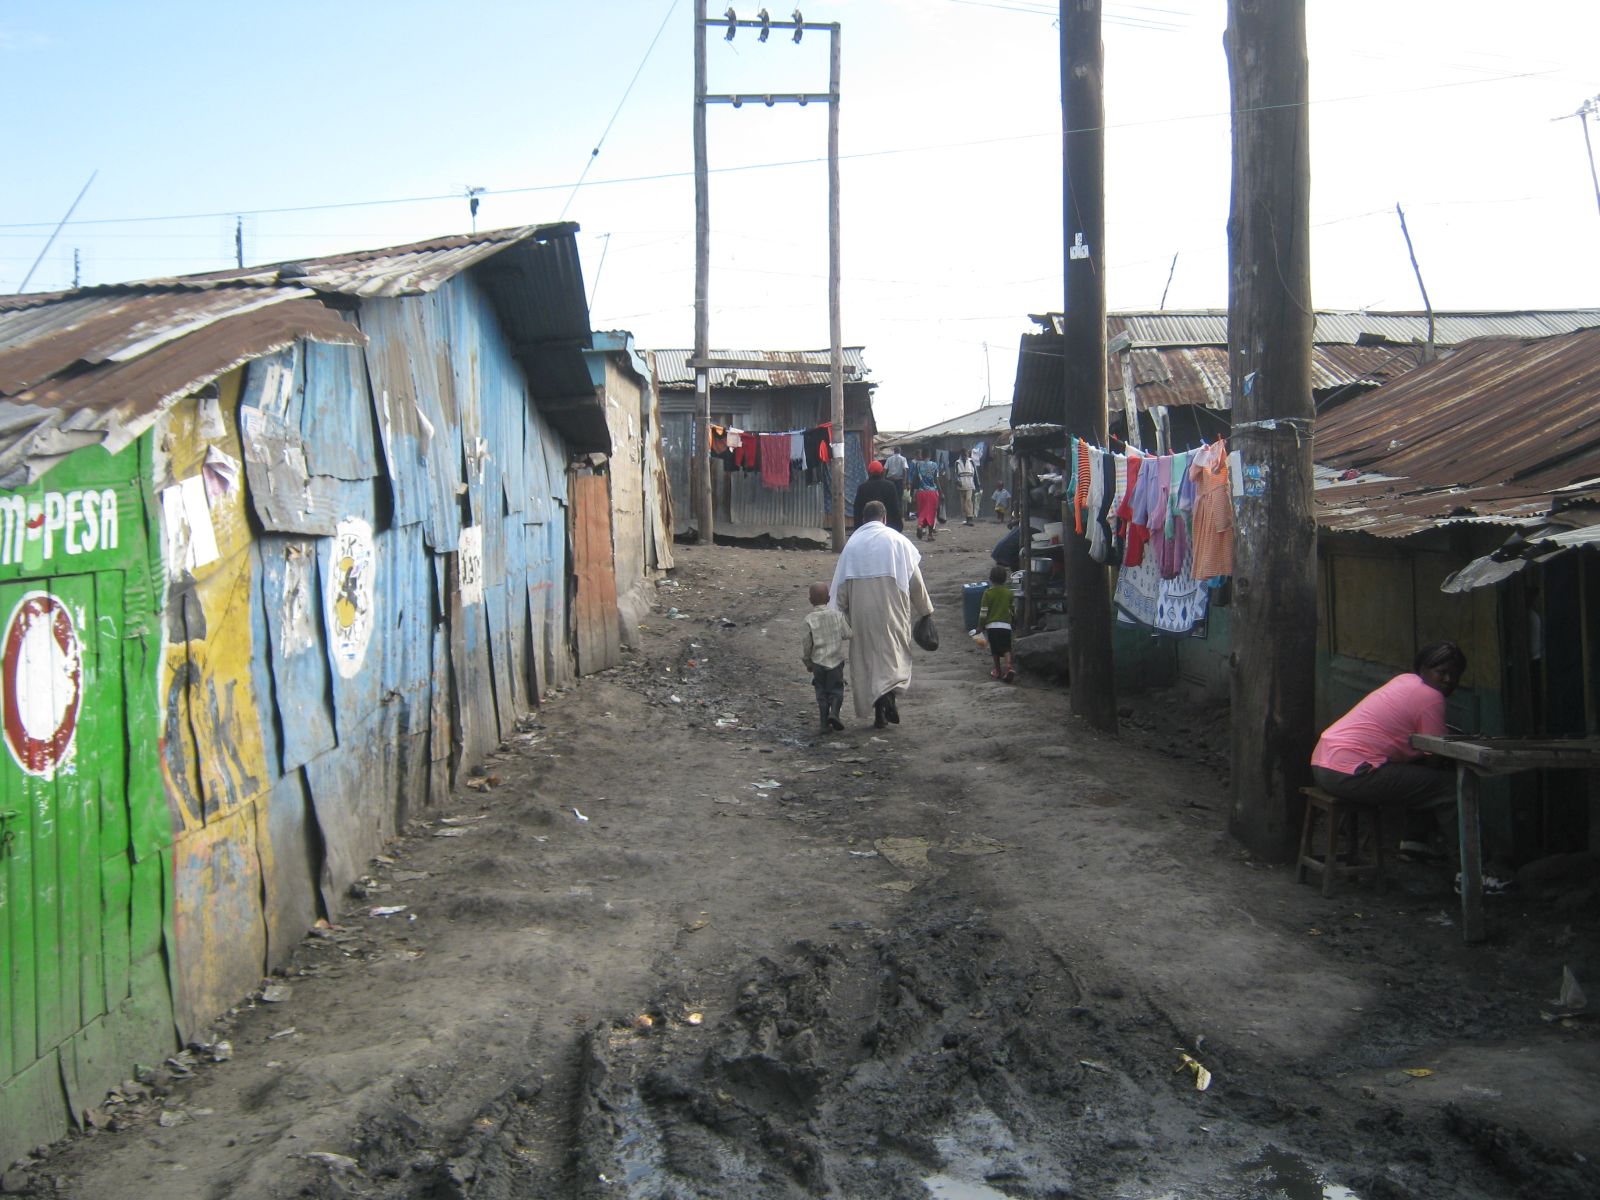 Viele Einwohner Nairobis leben in Slums. Das Zuhause, mit dem sie sich identifizieren, liegt irgendwo in einem Dorf.